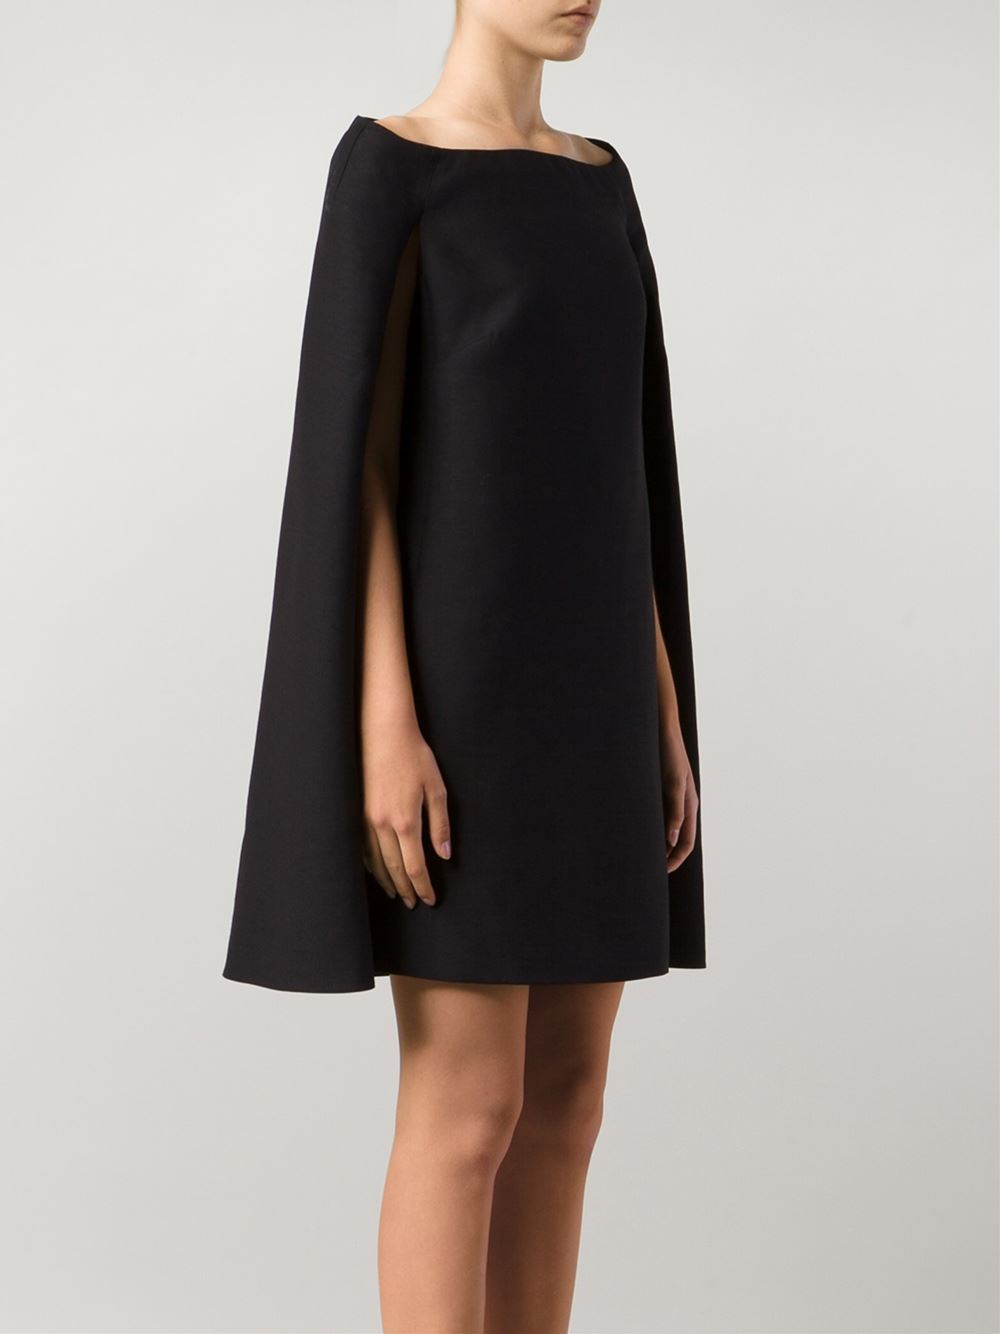 fersken supplere Tolk Valentino Cape Dress in Black | Lyst